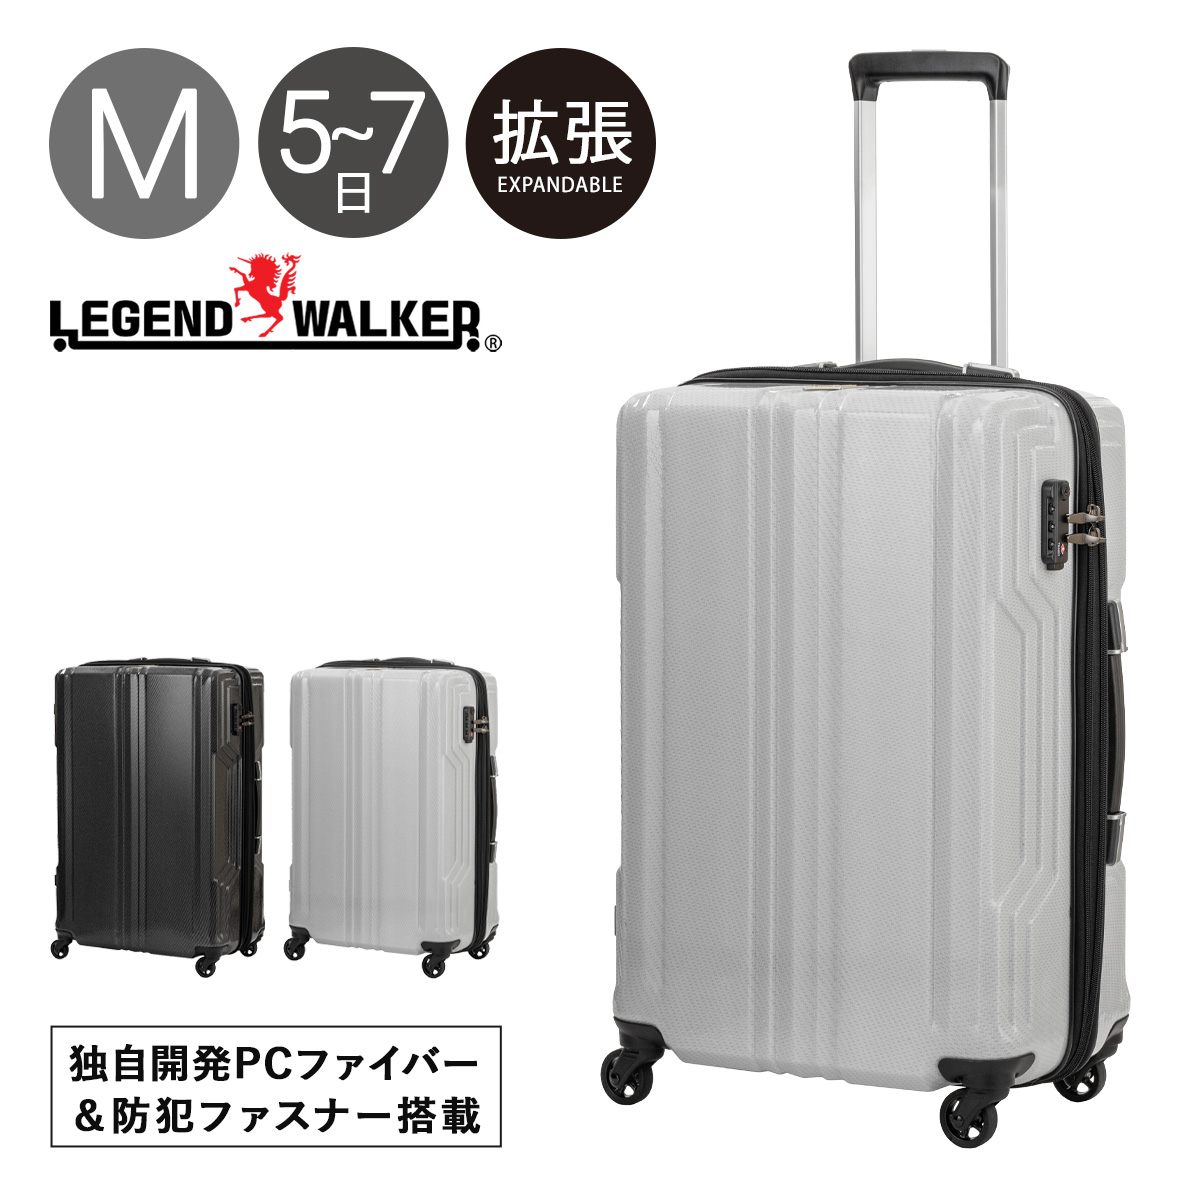 レジェンドウォーカー スーツケース 拡張機能付き 57L 59cm 3kg ブレイド 超軽量PCファイバー 5604-59 LEGENDWALKER  キャリーケース キャリーバッグ 1年保証